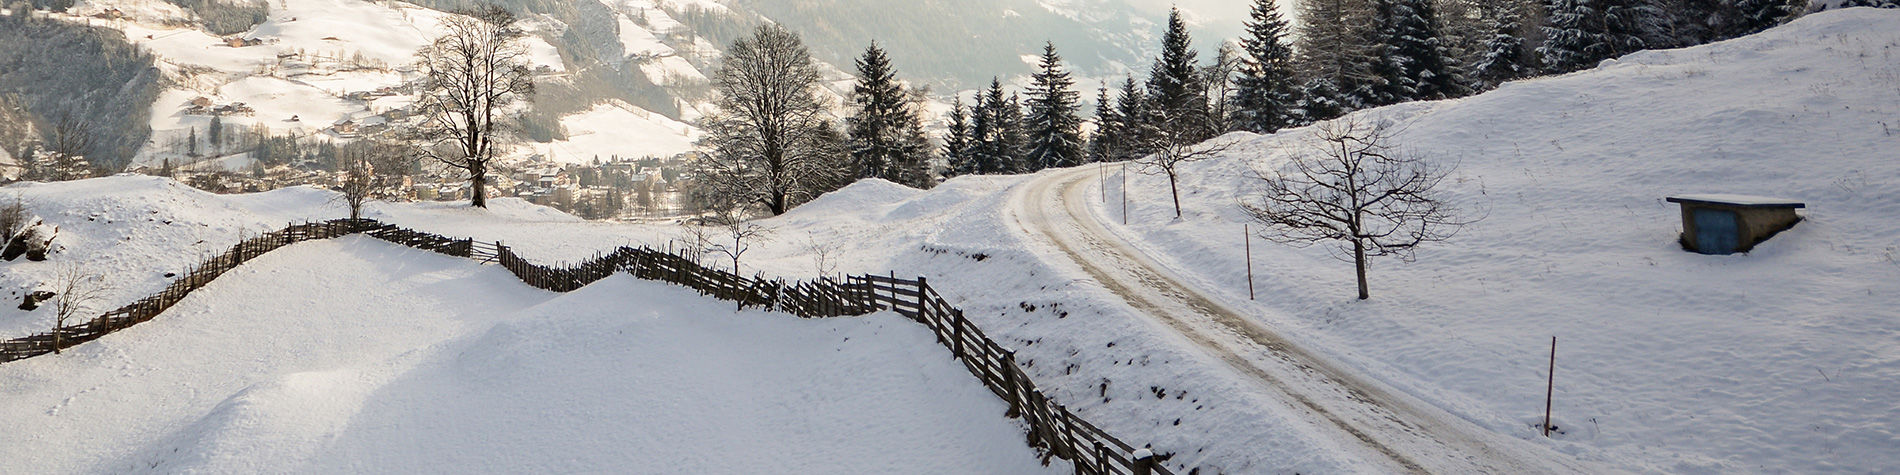 Pneu hiver : tout savoir sur les pneus hiver et neige (loi, prix, test,  occasion)